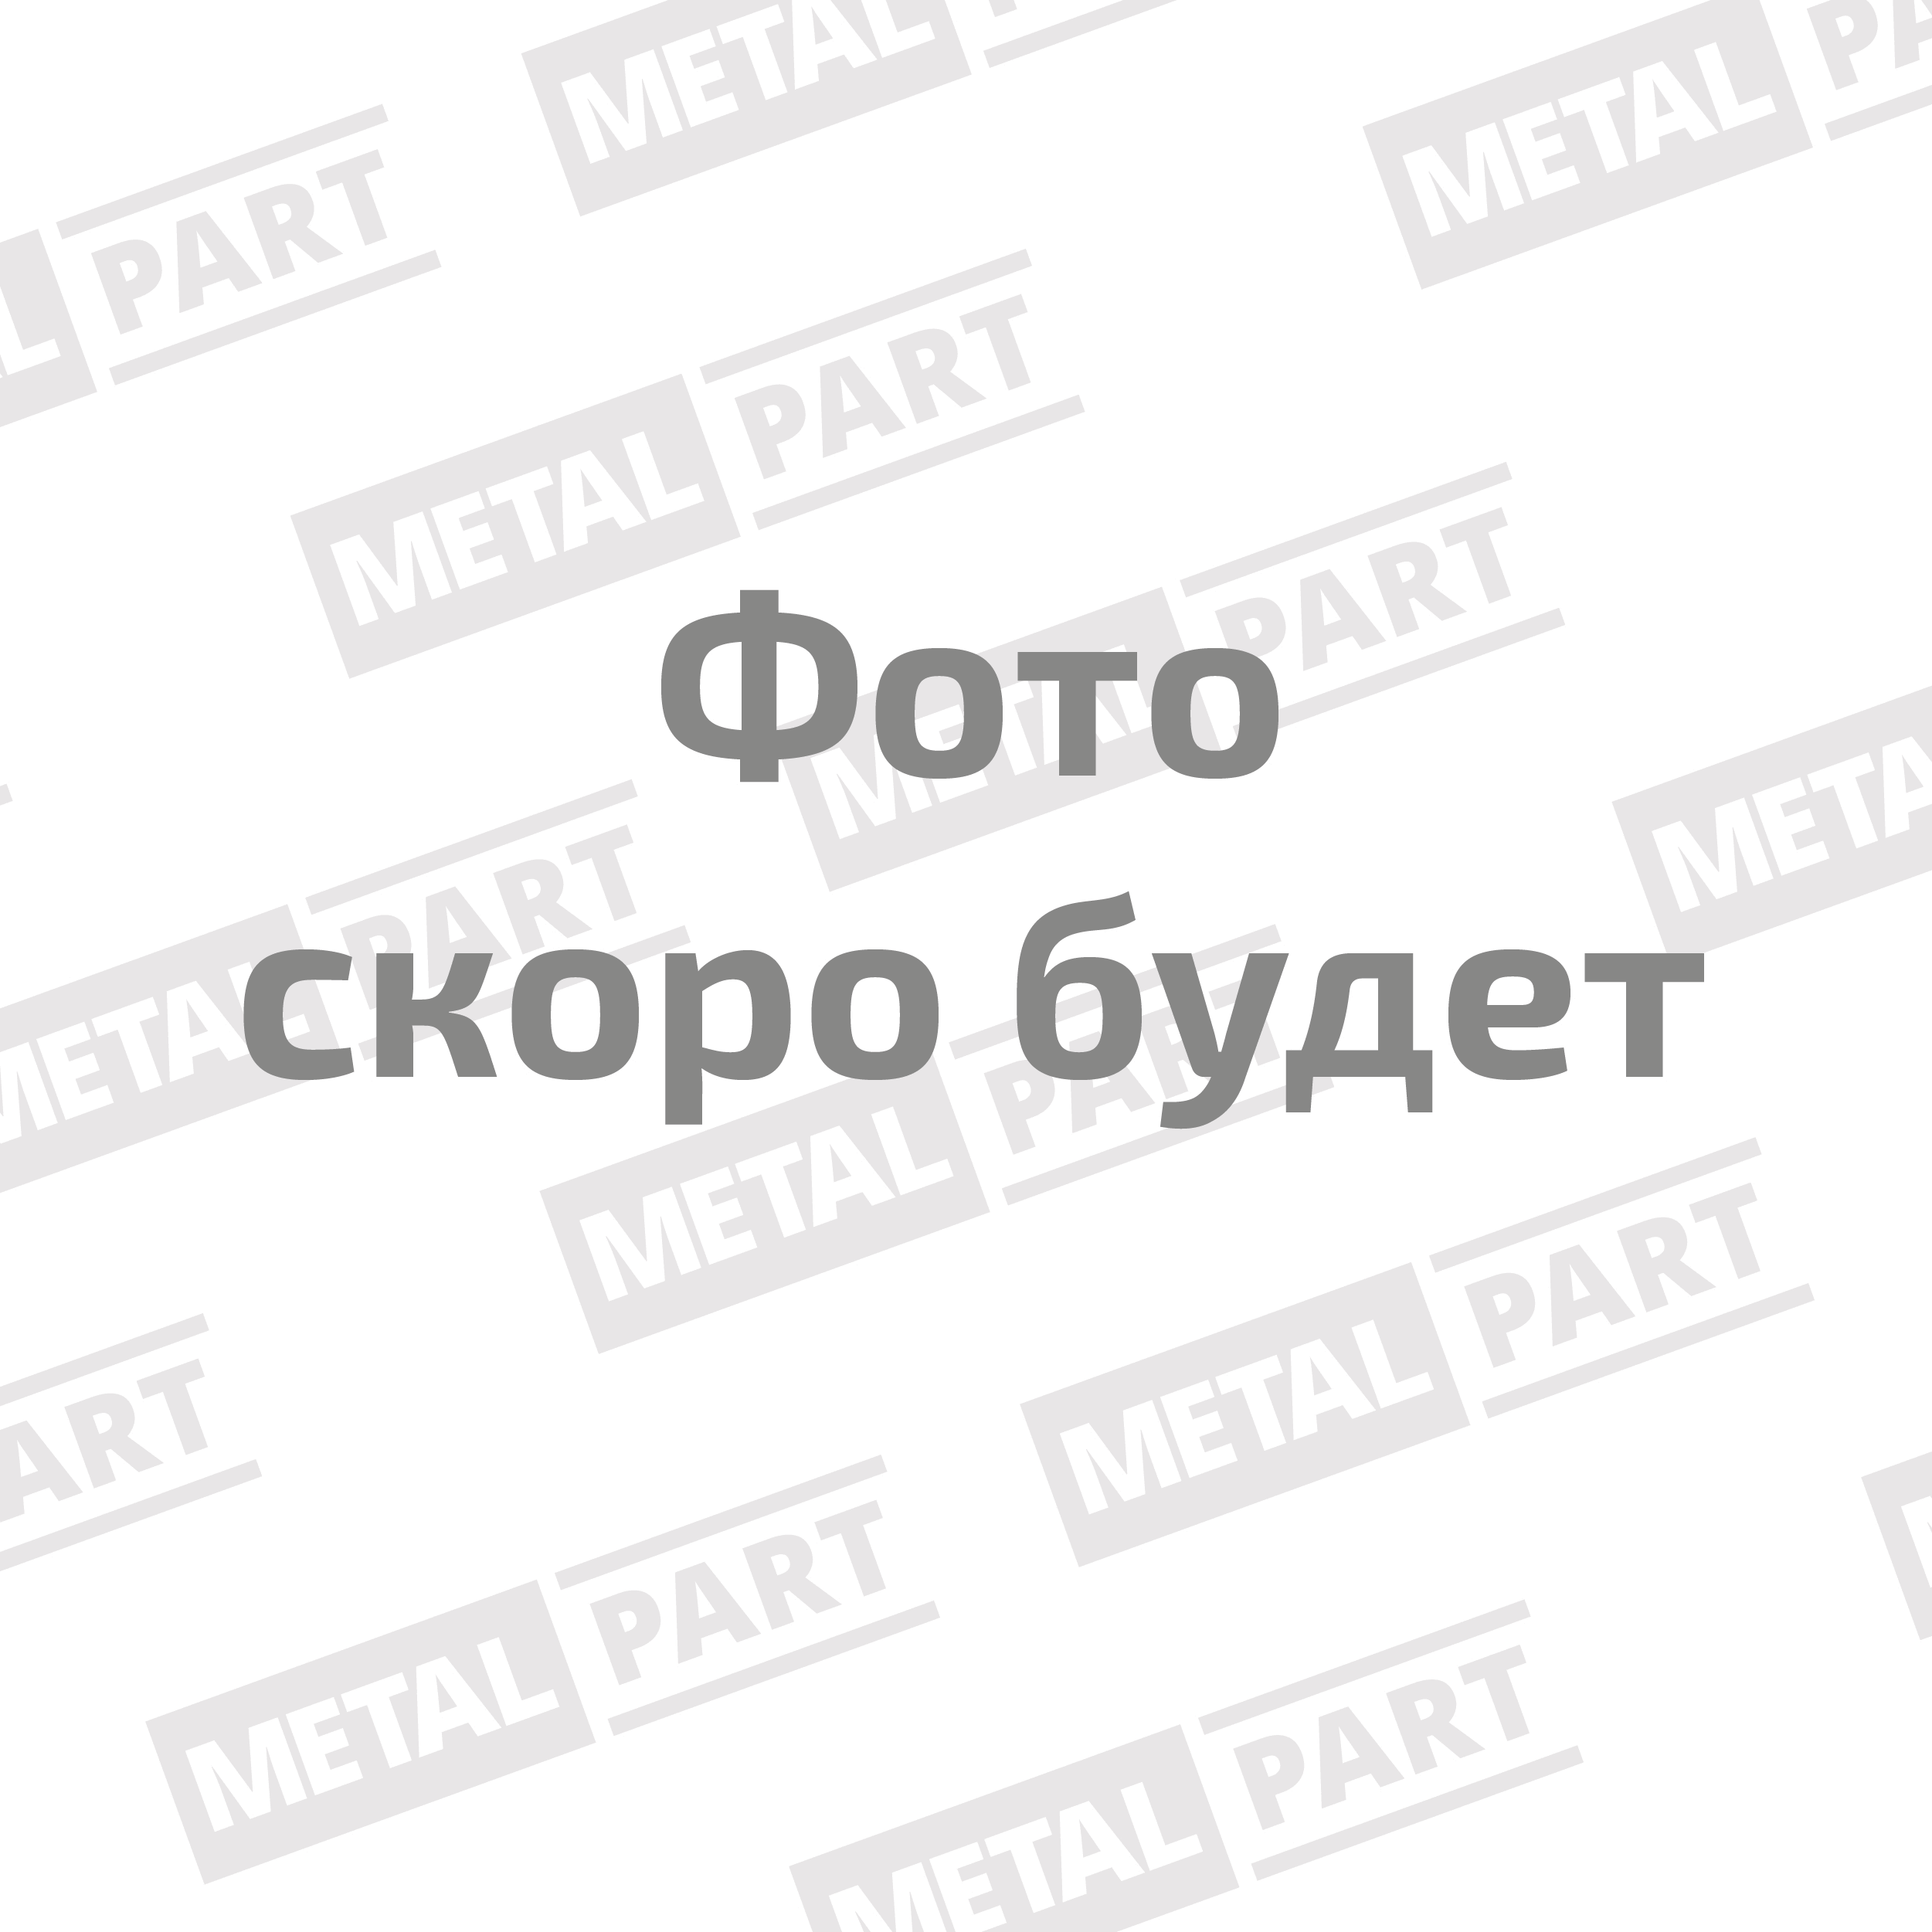 Вал карданный "MetalPart" заднего моста для автомобилей УАЗ-3151, -469, -33036, -39094 с мостами "Т